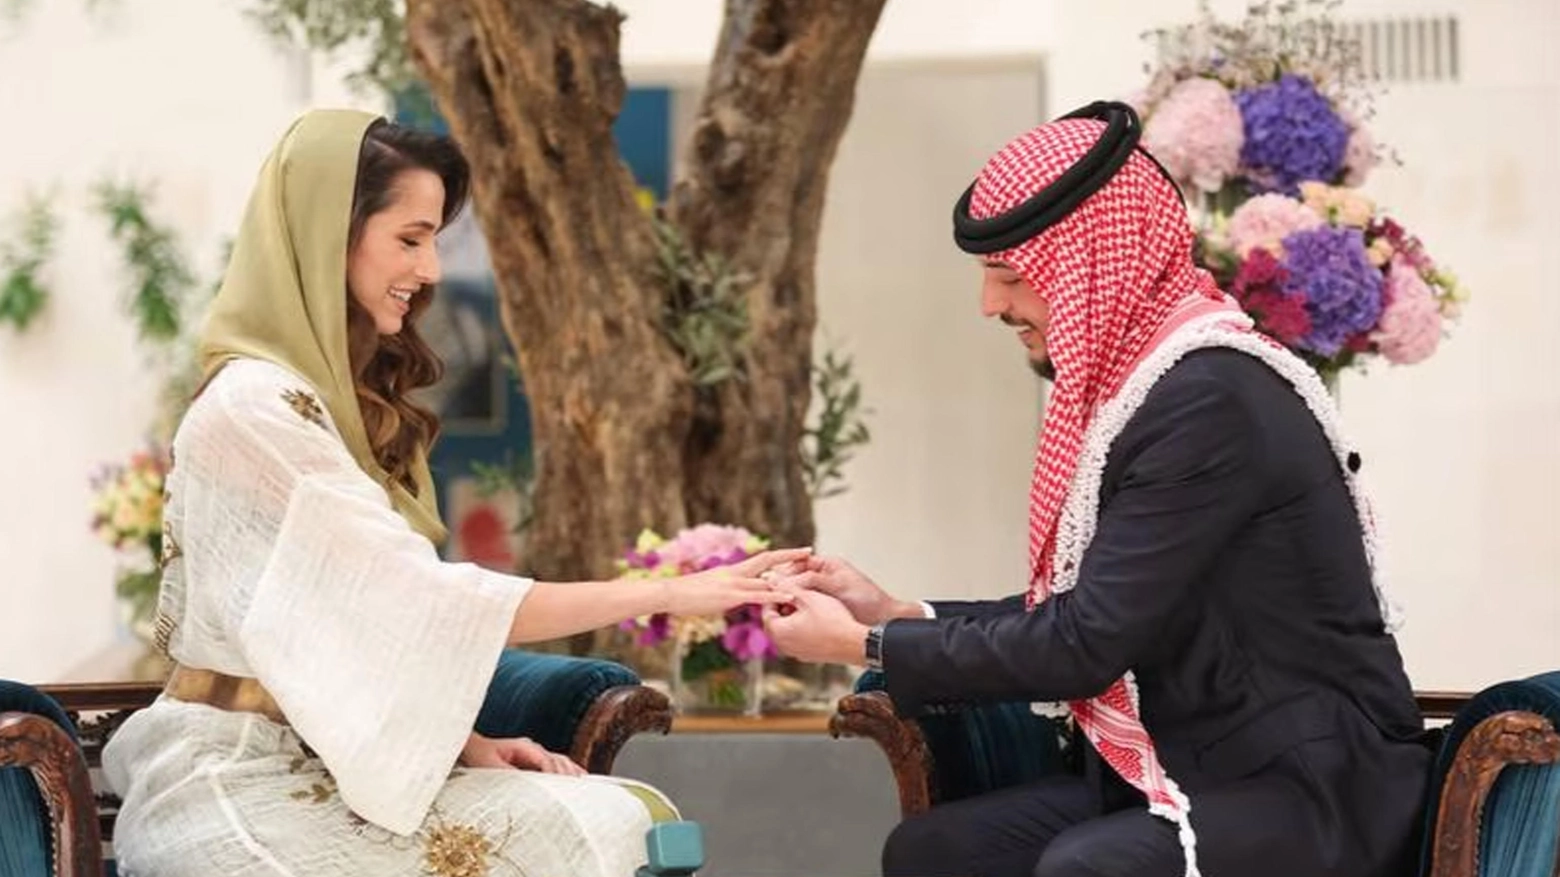 <p>Giordania, chi è Rajwa Saif: 3 cose da sapere sulla futura regina /<a href="https://www.quotidiano.net/magazine/giordania-matrimonio-hussein-rania-news-wh6817xz"> I preparativi per il matrimonio reale</a></p>